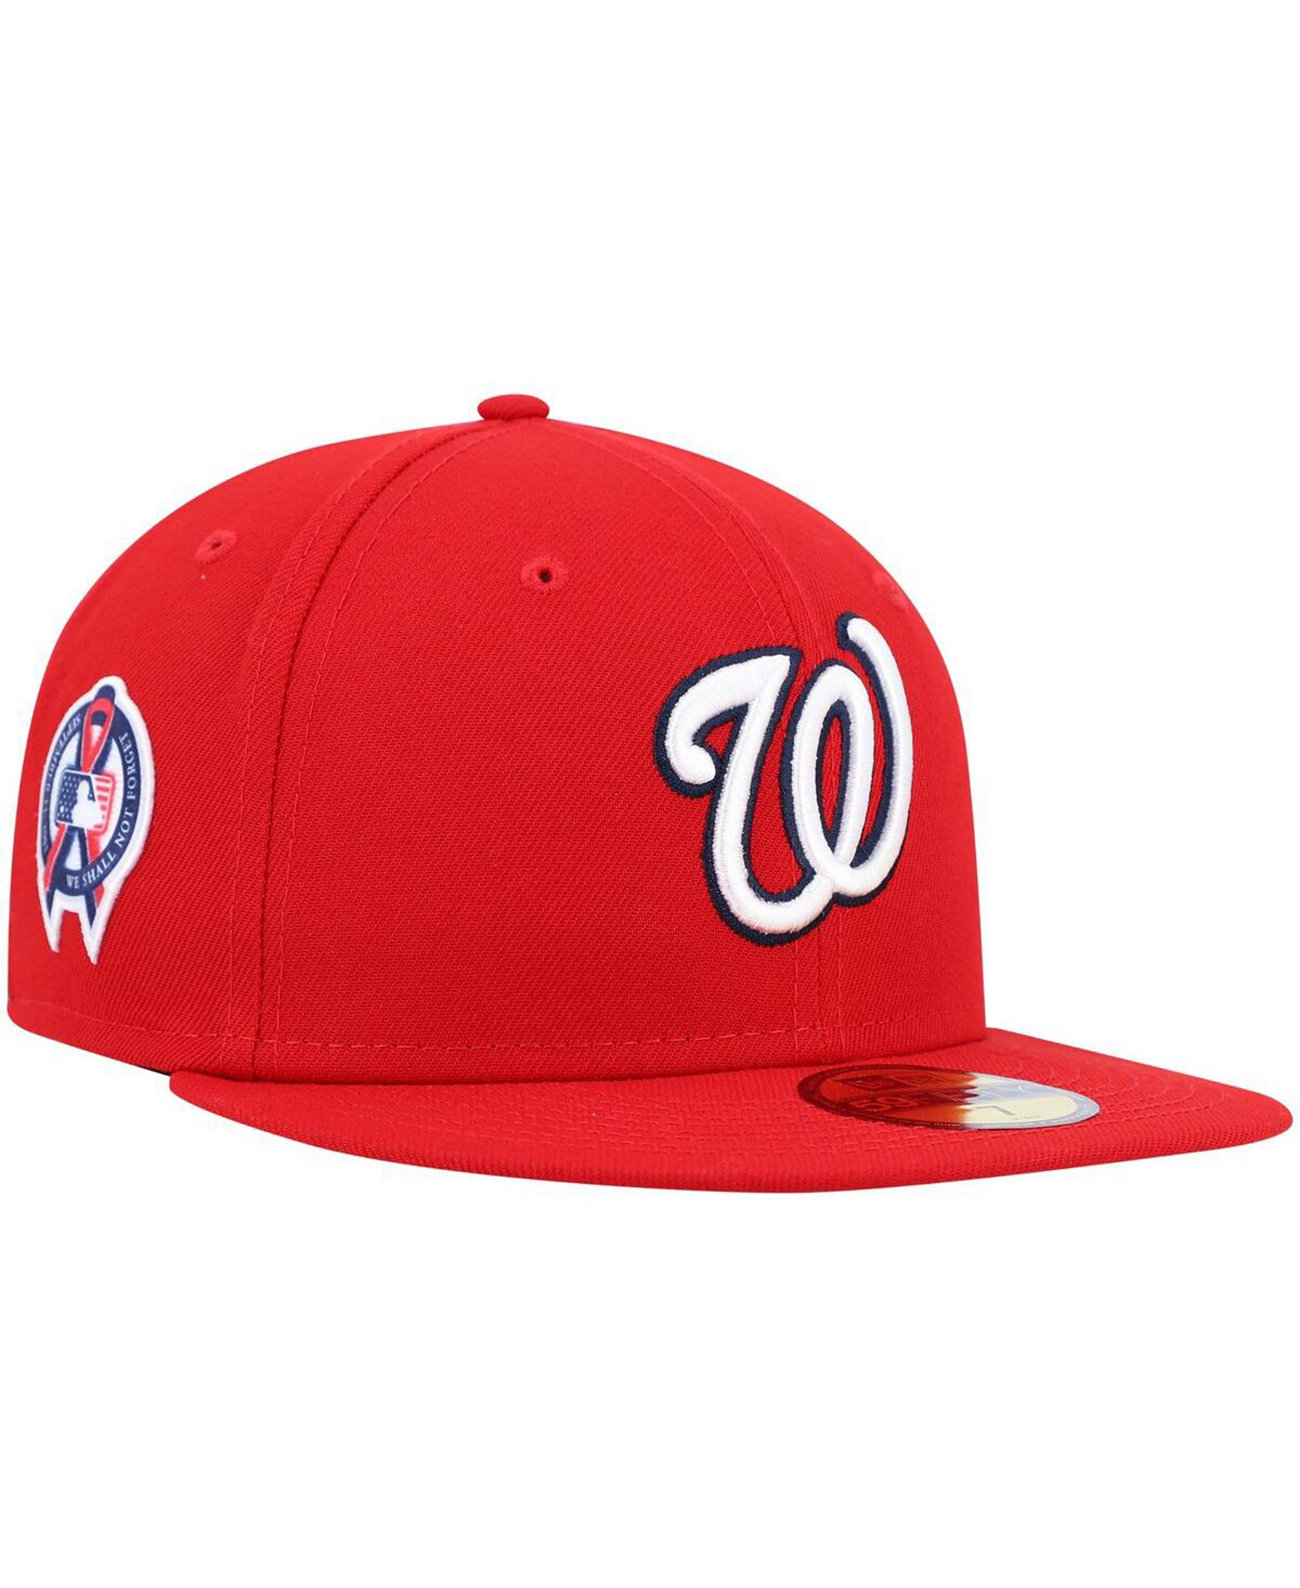 Мужская красная шляпа с надписью "Washington Nationals 9/11" сбоку 59FIFTY New Era